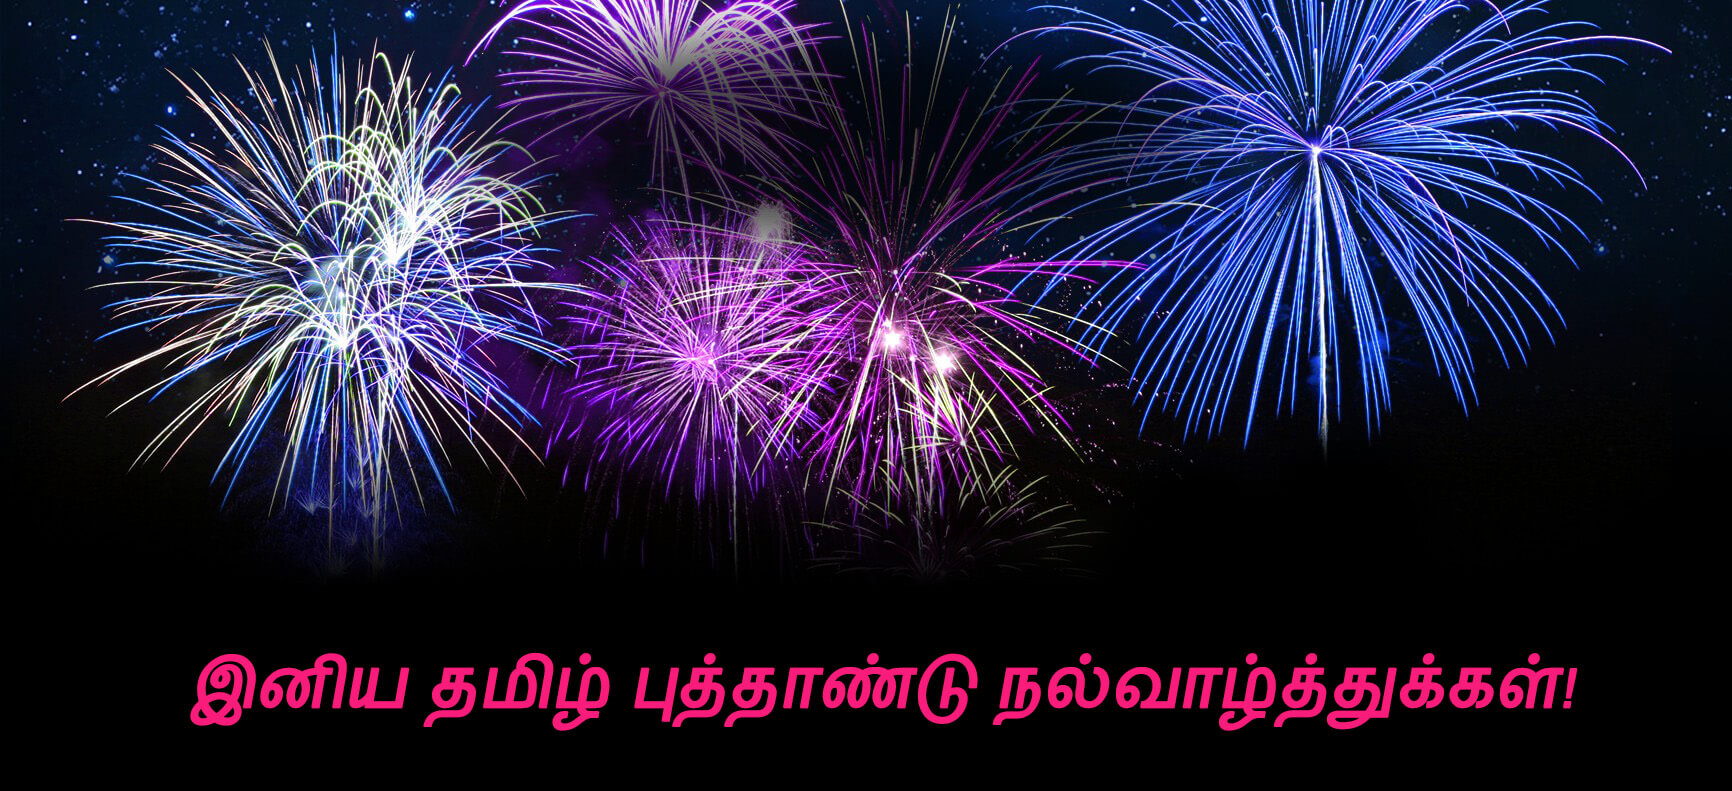 carta da parati tamil di nuovo anno,fuochi d'artificio,capodanno,nuovo anno,mezzanotte,viola